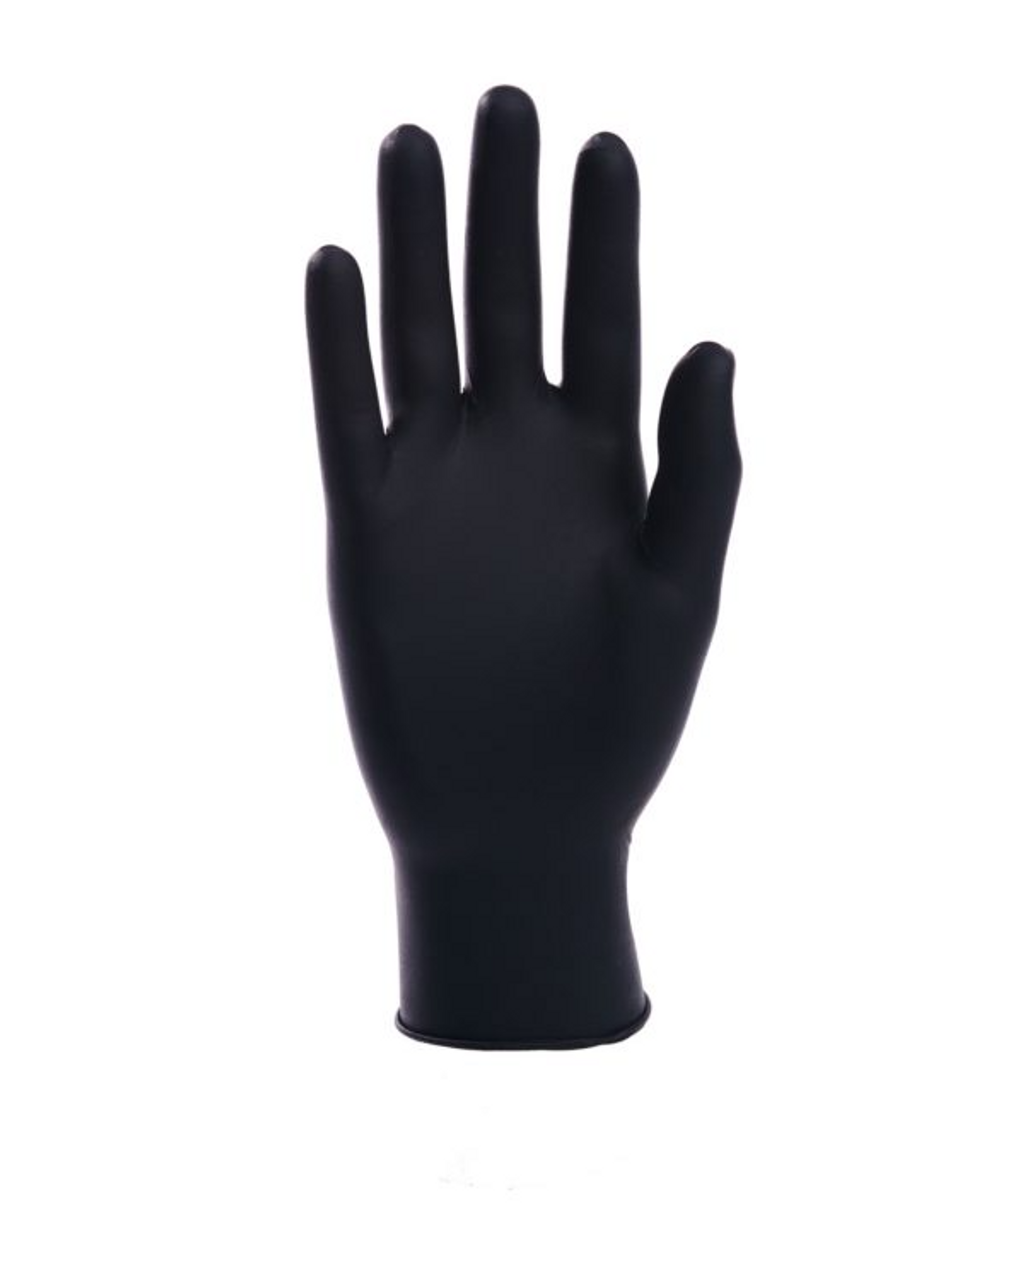 SureCare NITRILE – Standard Black 5 MIL Gloves - 1 Box